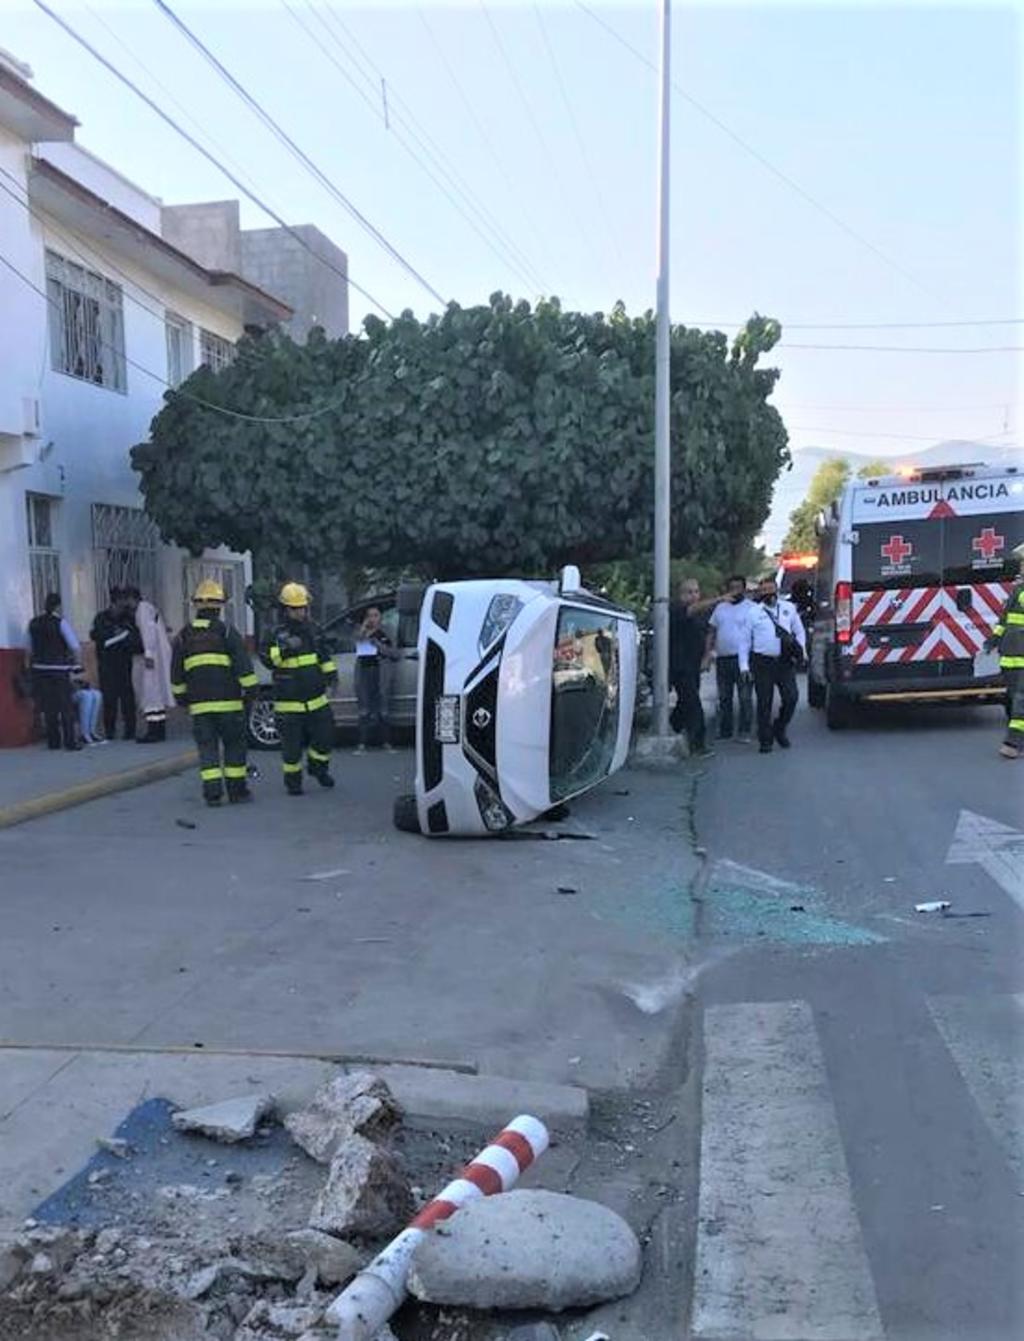 El percance sucedió alrededor de las 9 de la mañana de este martes en el cruce de la avenida Victoria y calle Comonfort del sector Centro de Torreón.

(EL SIGLO DE TORREÓN)